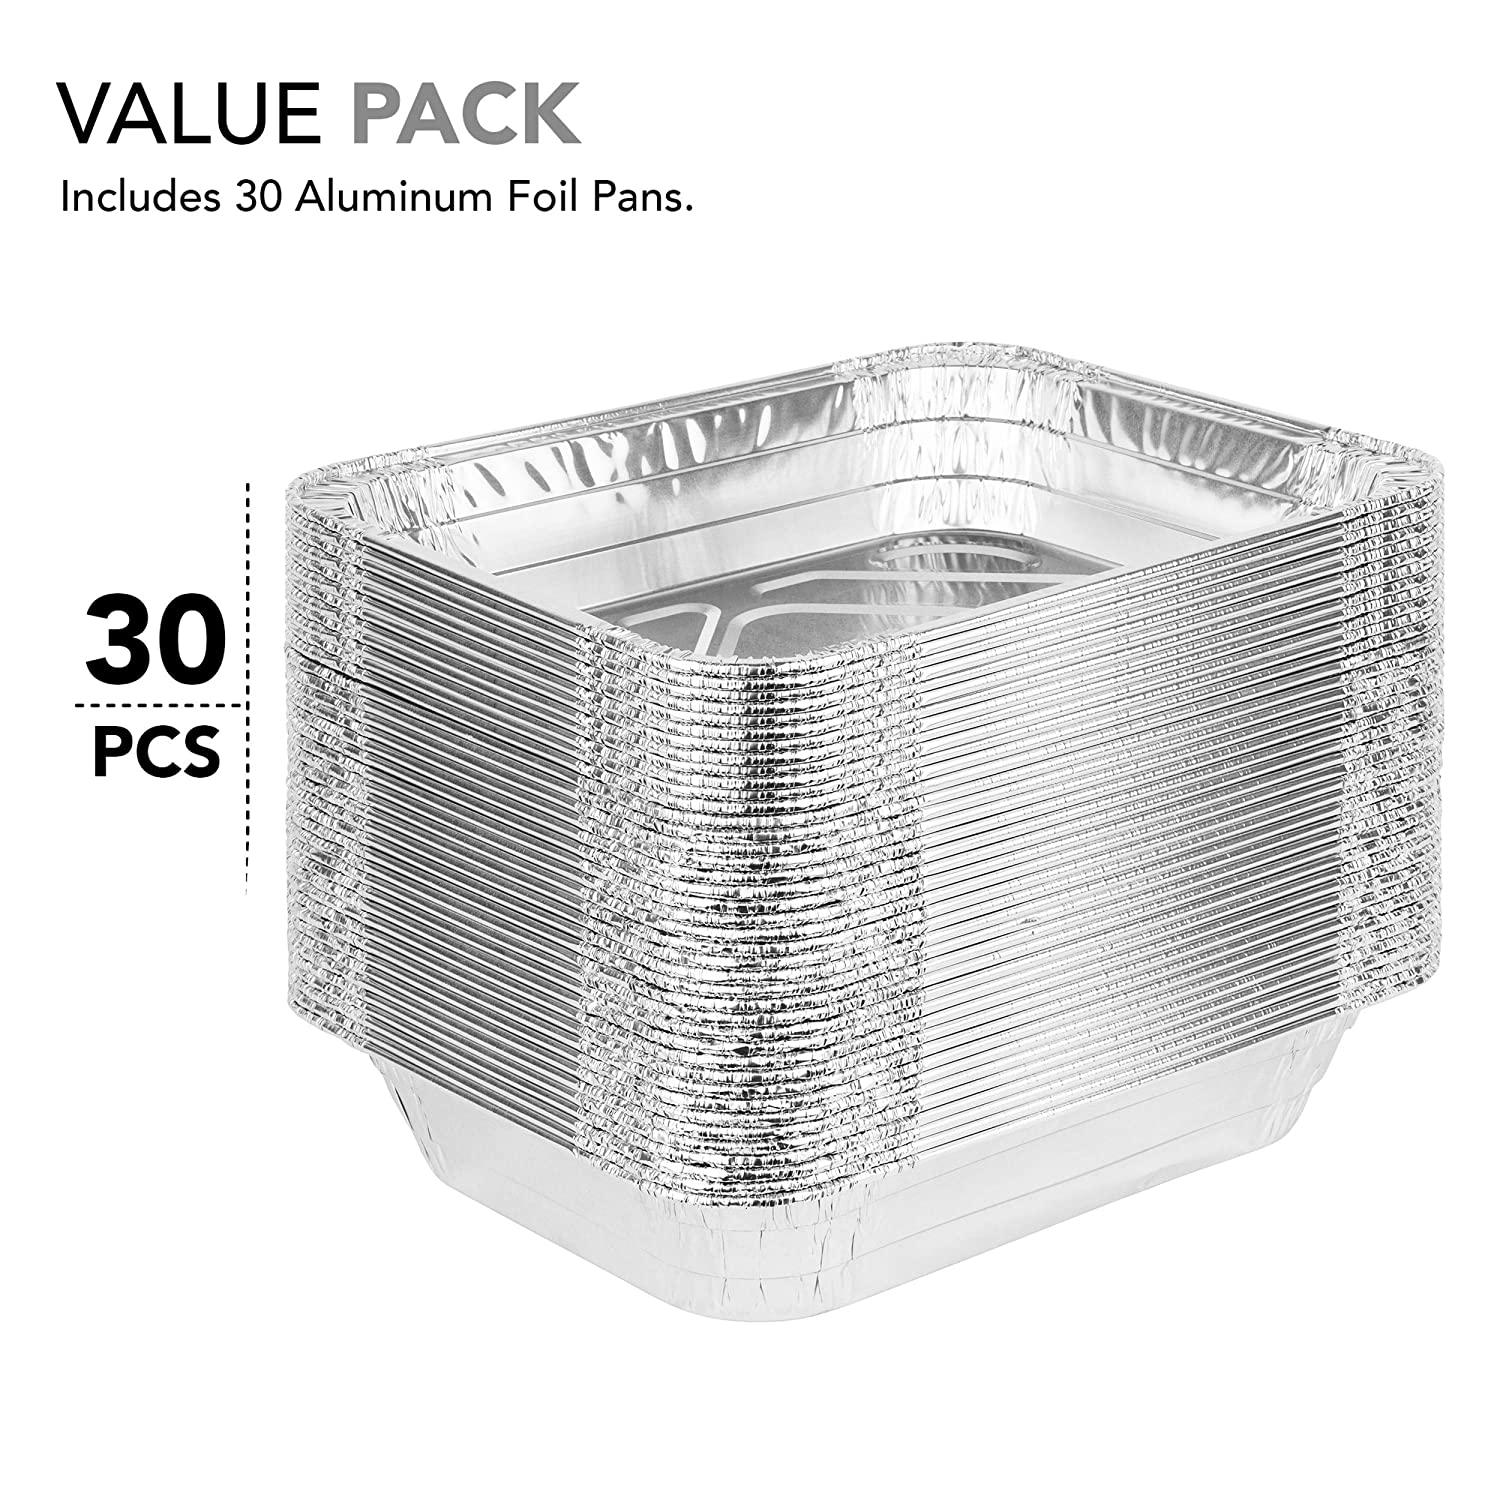 Stock Your Home Disposable 9x13 Aluminum Foil Pans (10 Pack) Half